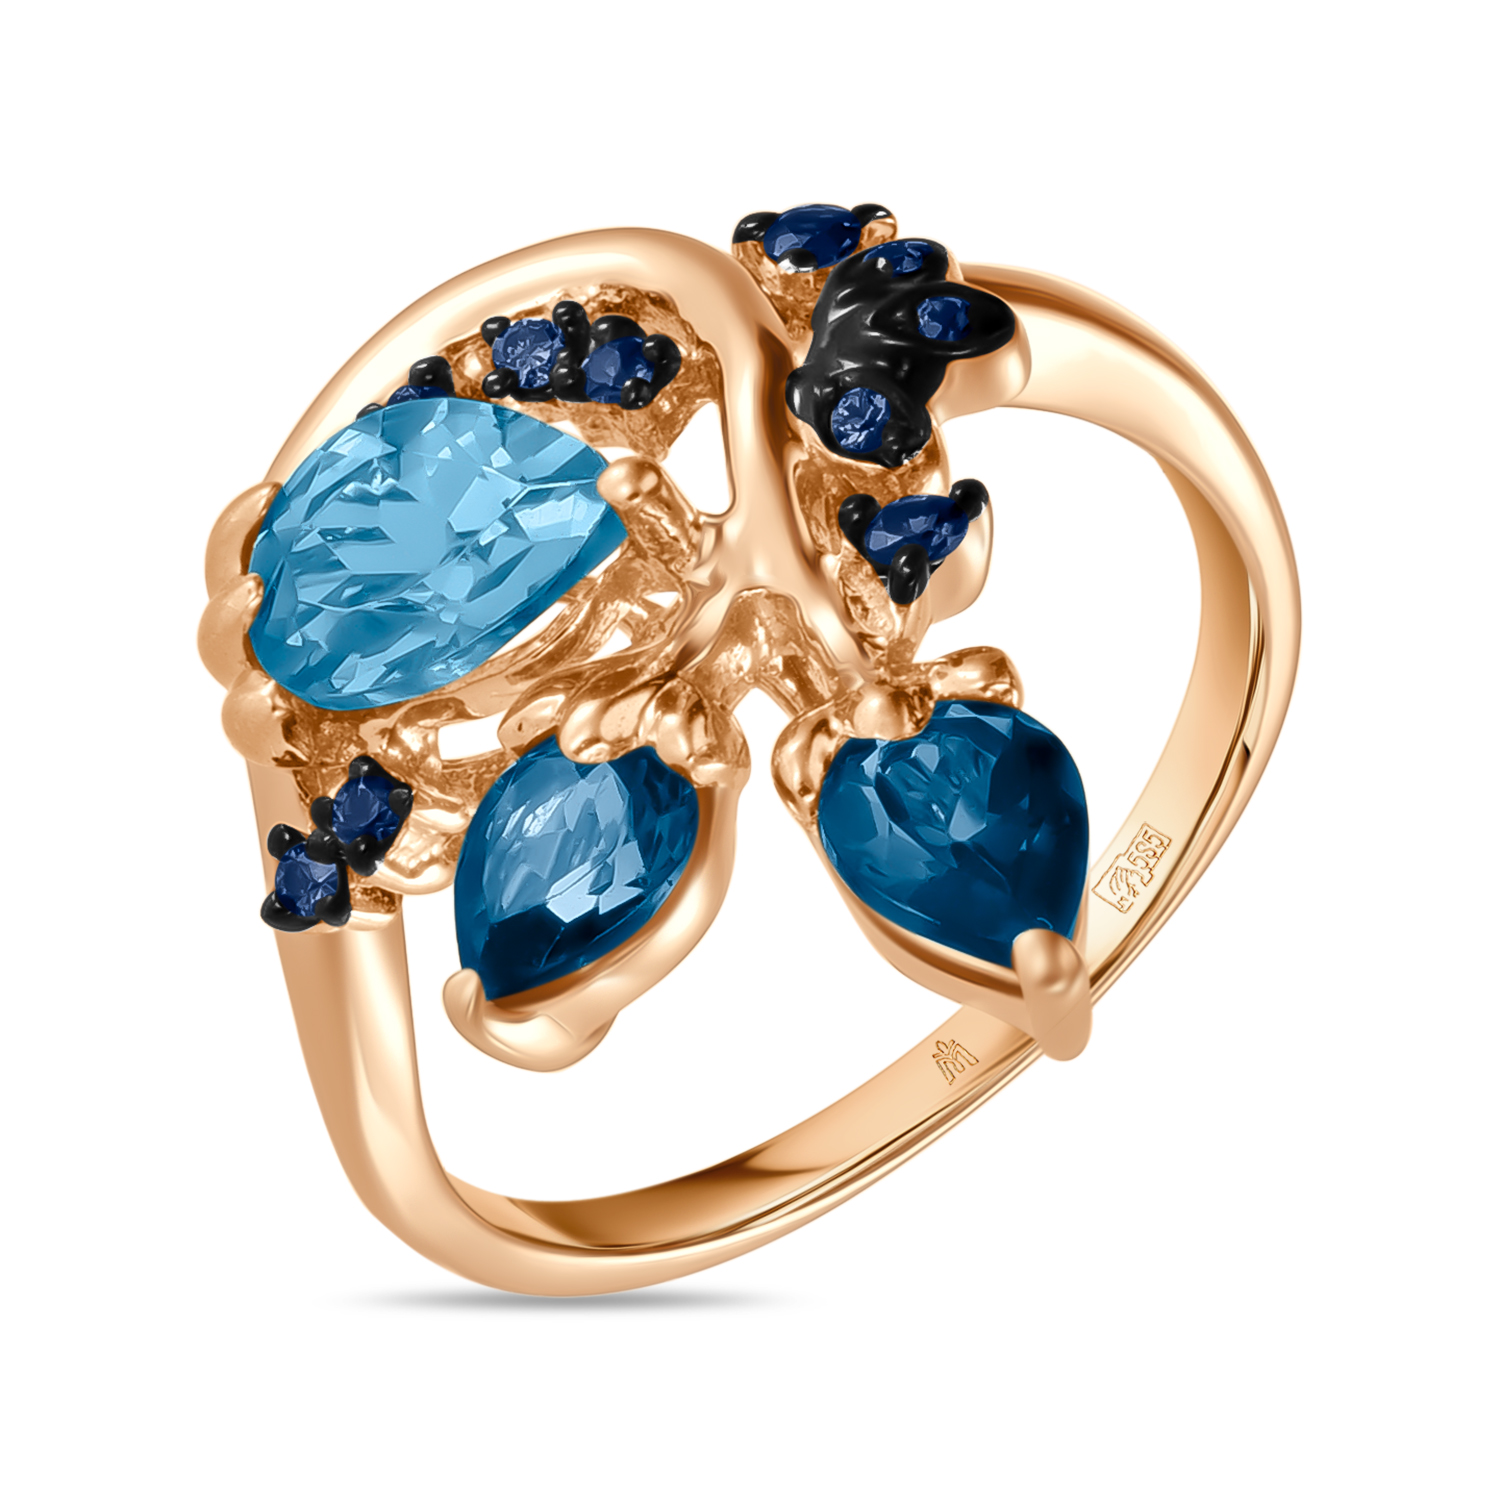 Кольца МЮЗ Золотое кольцо с топазом, цветными бриллиантами и сапфирами кольца мюз золотое кольцо с аметистом топазом цитрином бриллиантами и цветными бриллиантами